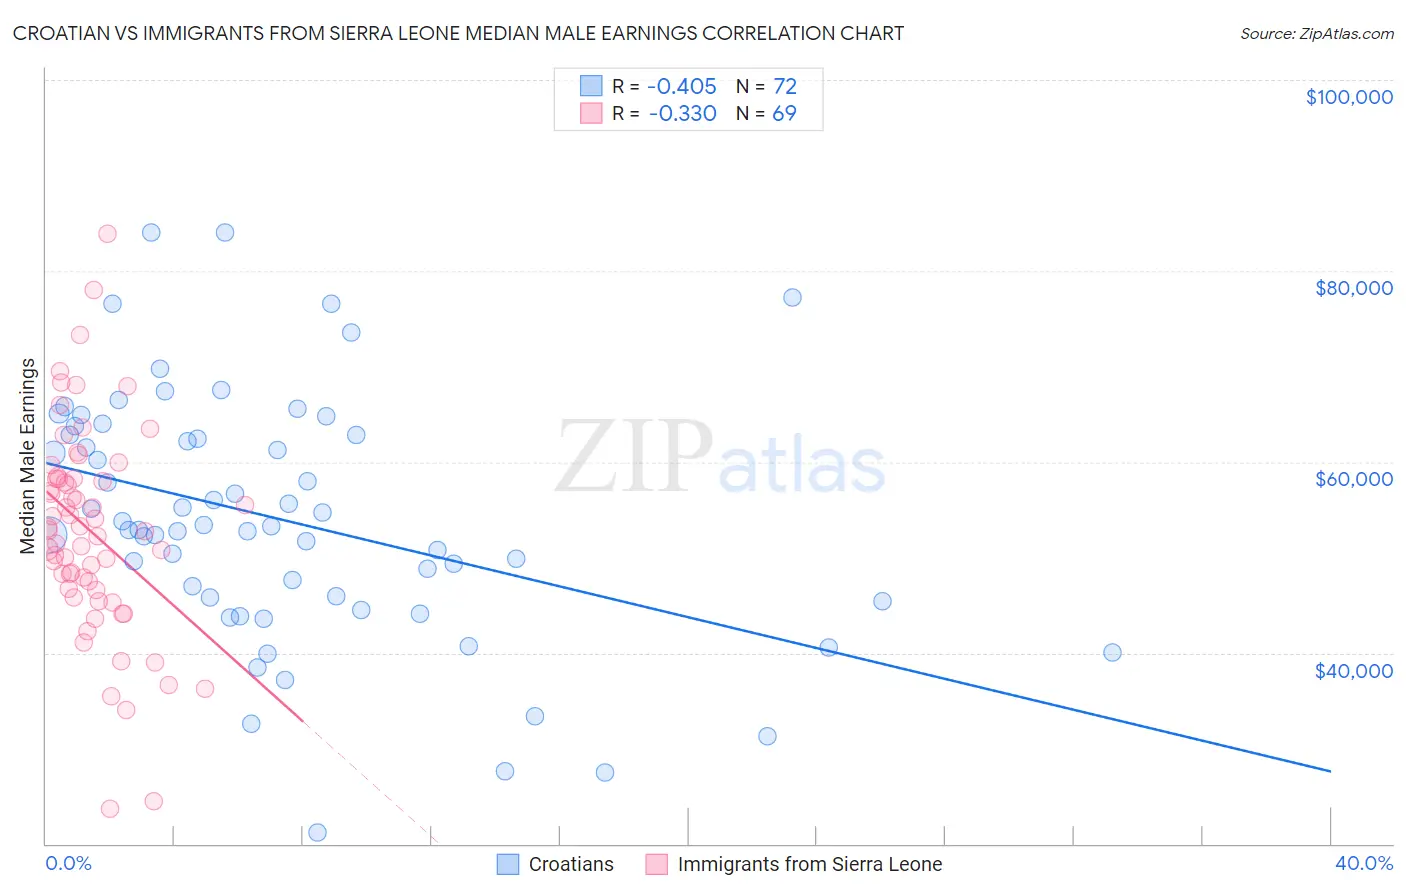 Croatian vs Immigrants from Sierra Leone Median Male Earnings